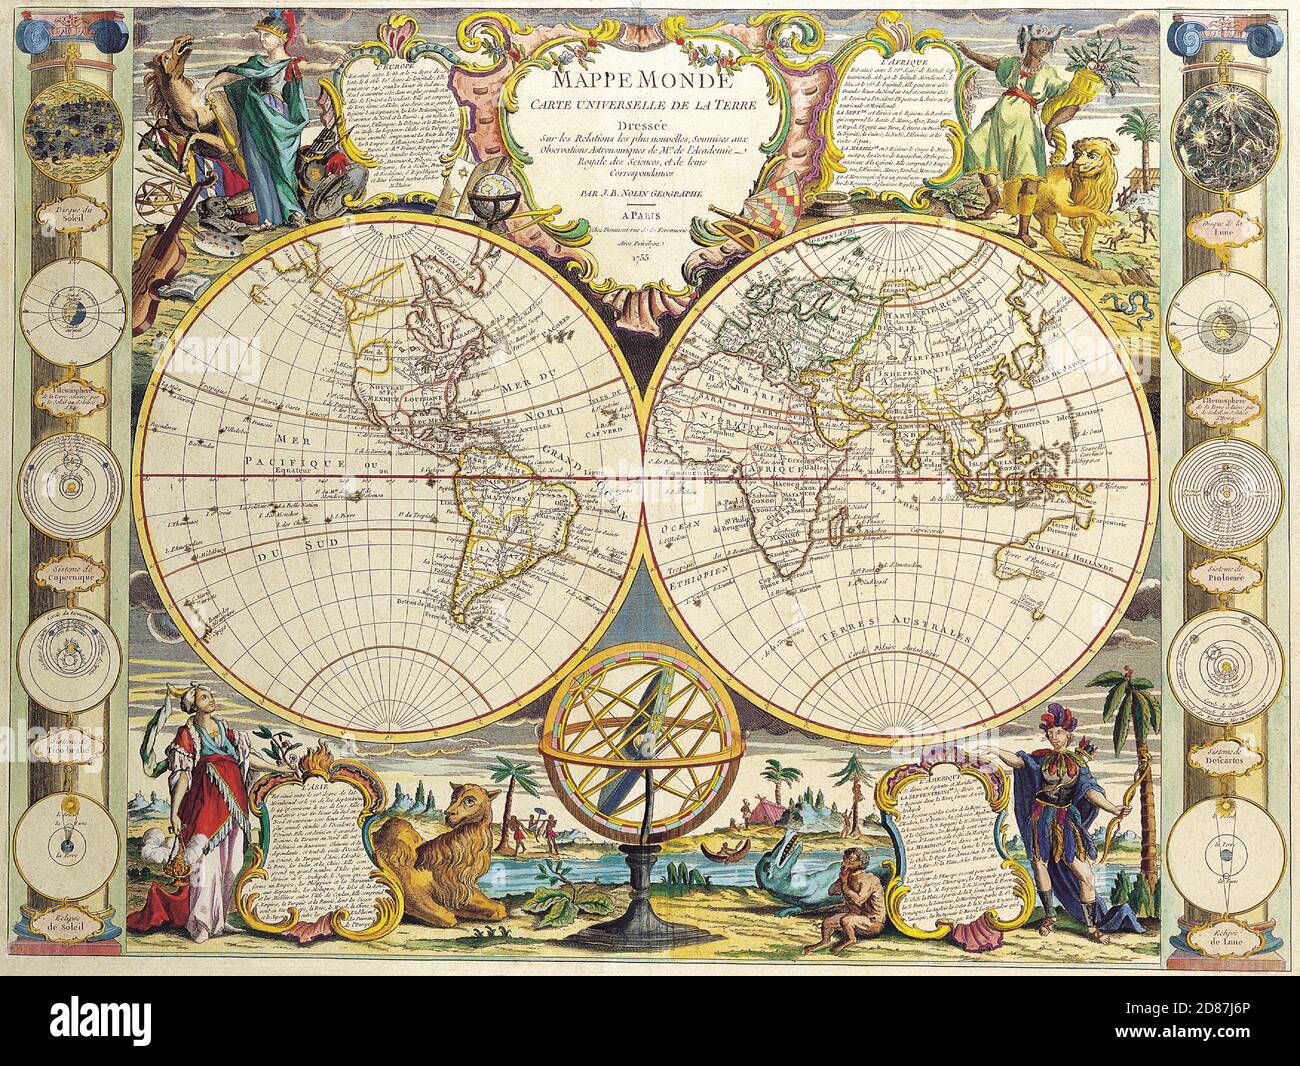 Ancienne carte du monde illustrée, style vintage plein de détails Banque D'Images